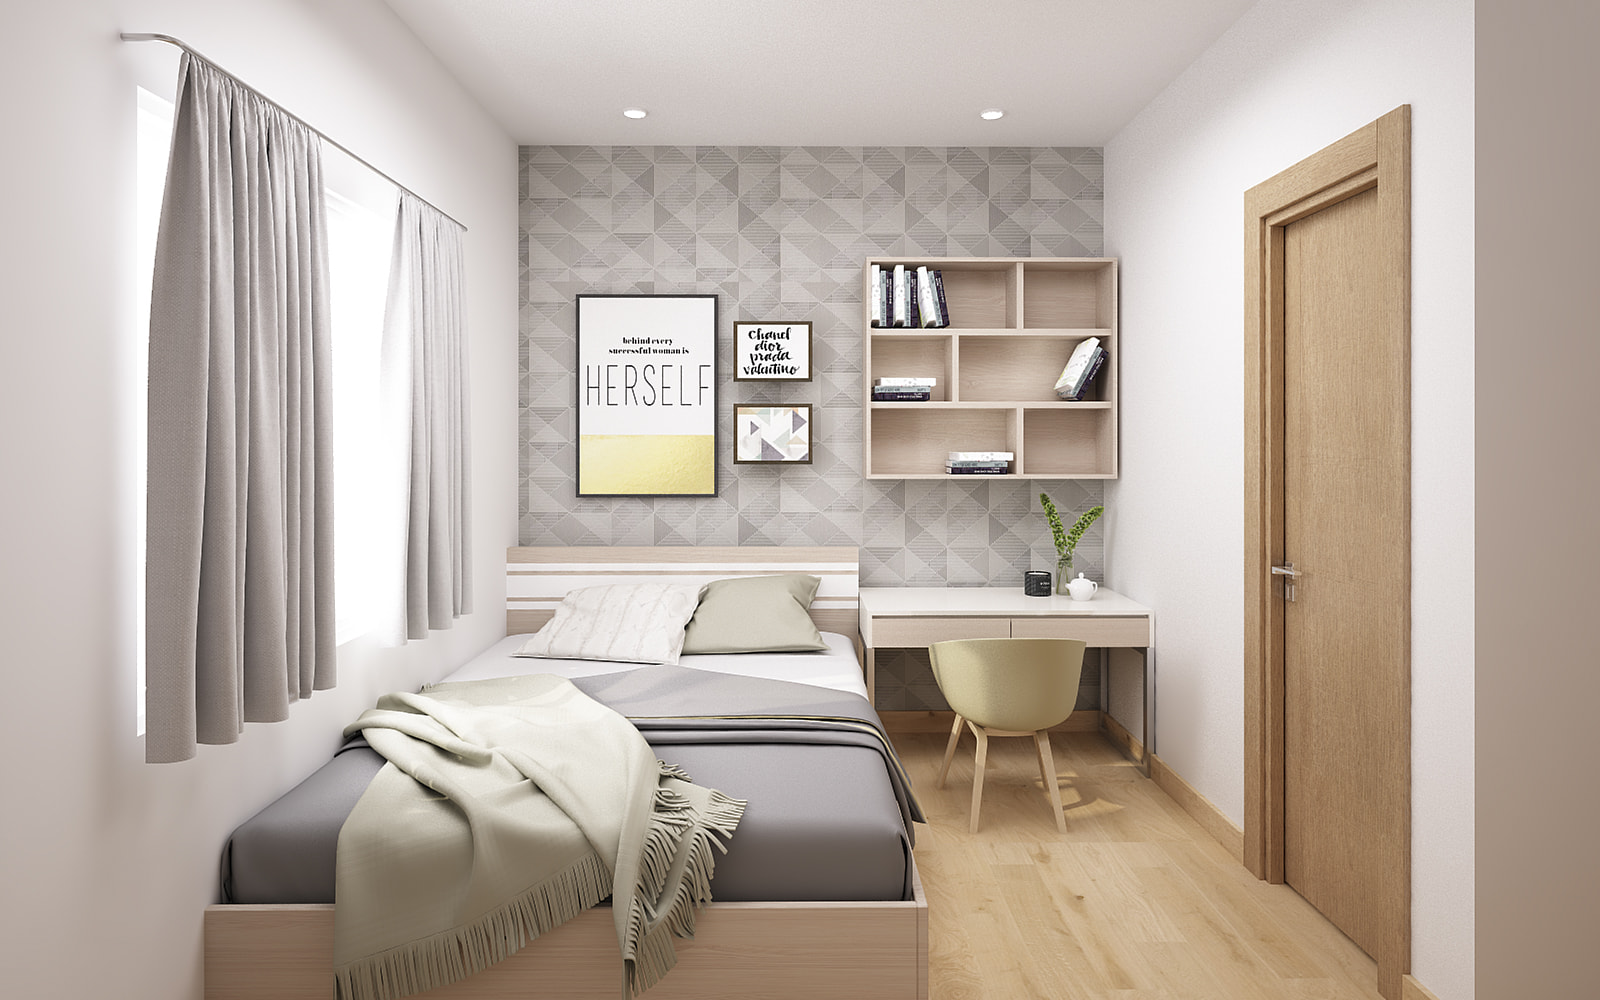 Phong cách thiết kế phòng ngủ dành cho những tín đồ yêu thích sự tối giản và nhẹ nhàng